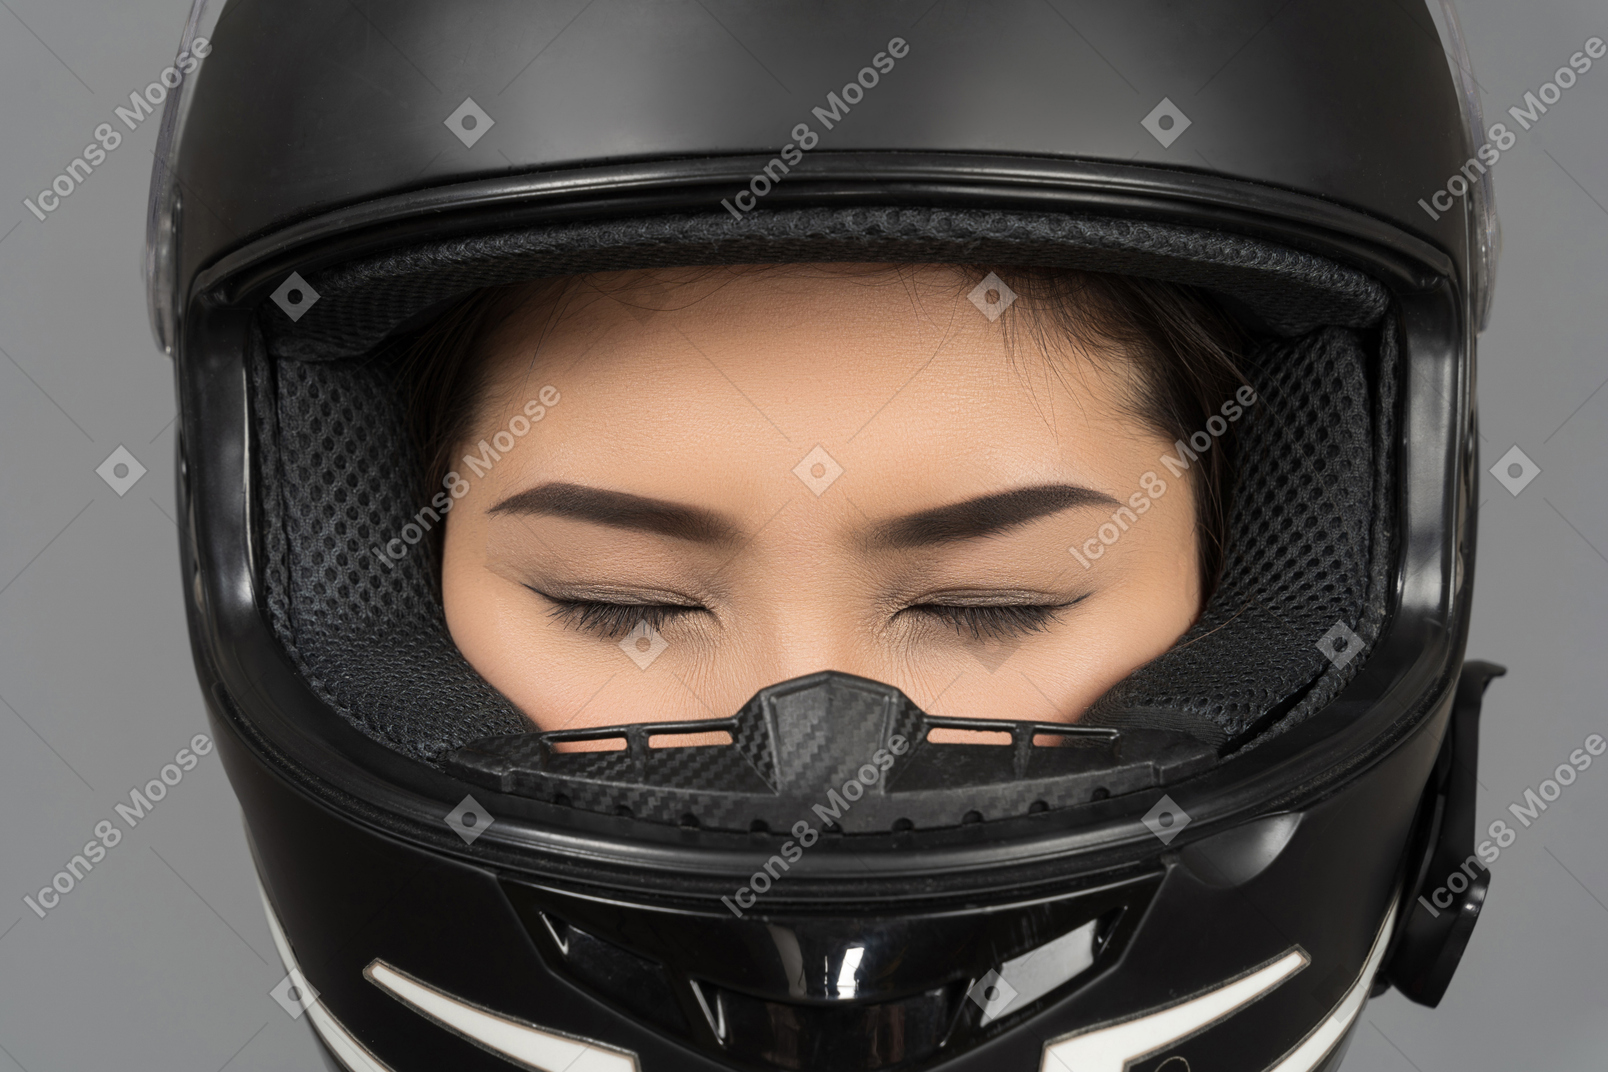 Uma mulher com os olhos fechados, usando um capacete preto